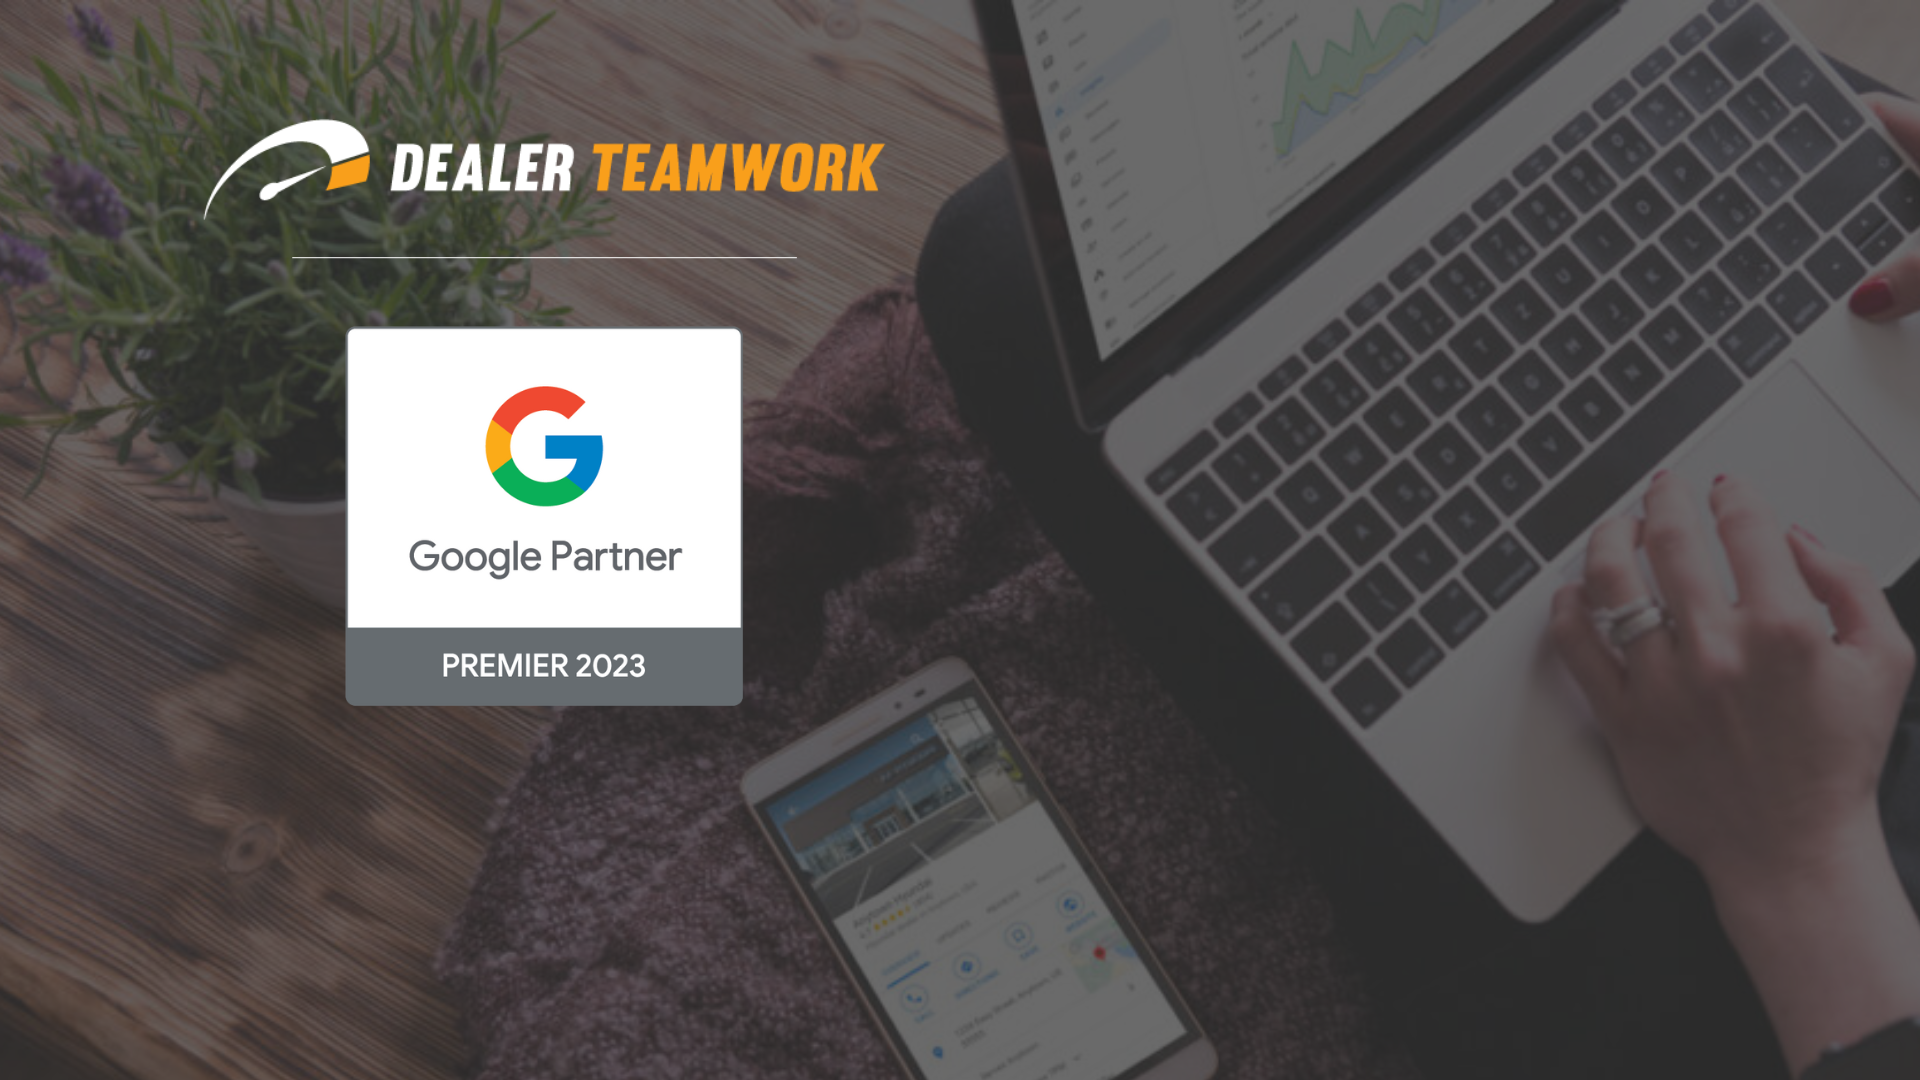 Dealer Teamwork is a 2023 Google Premier Partner